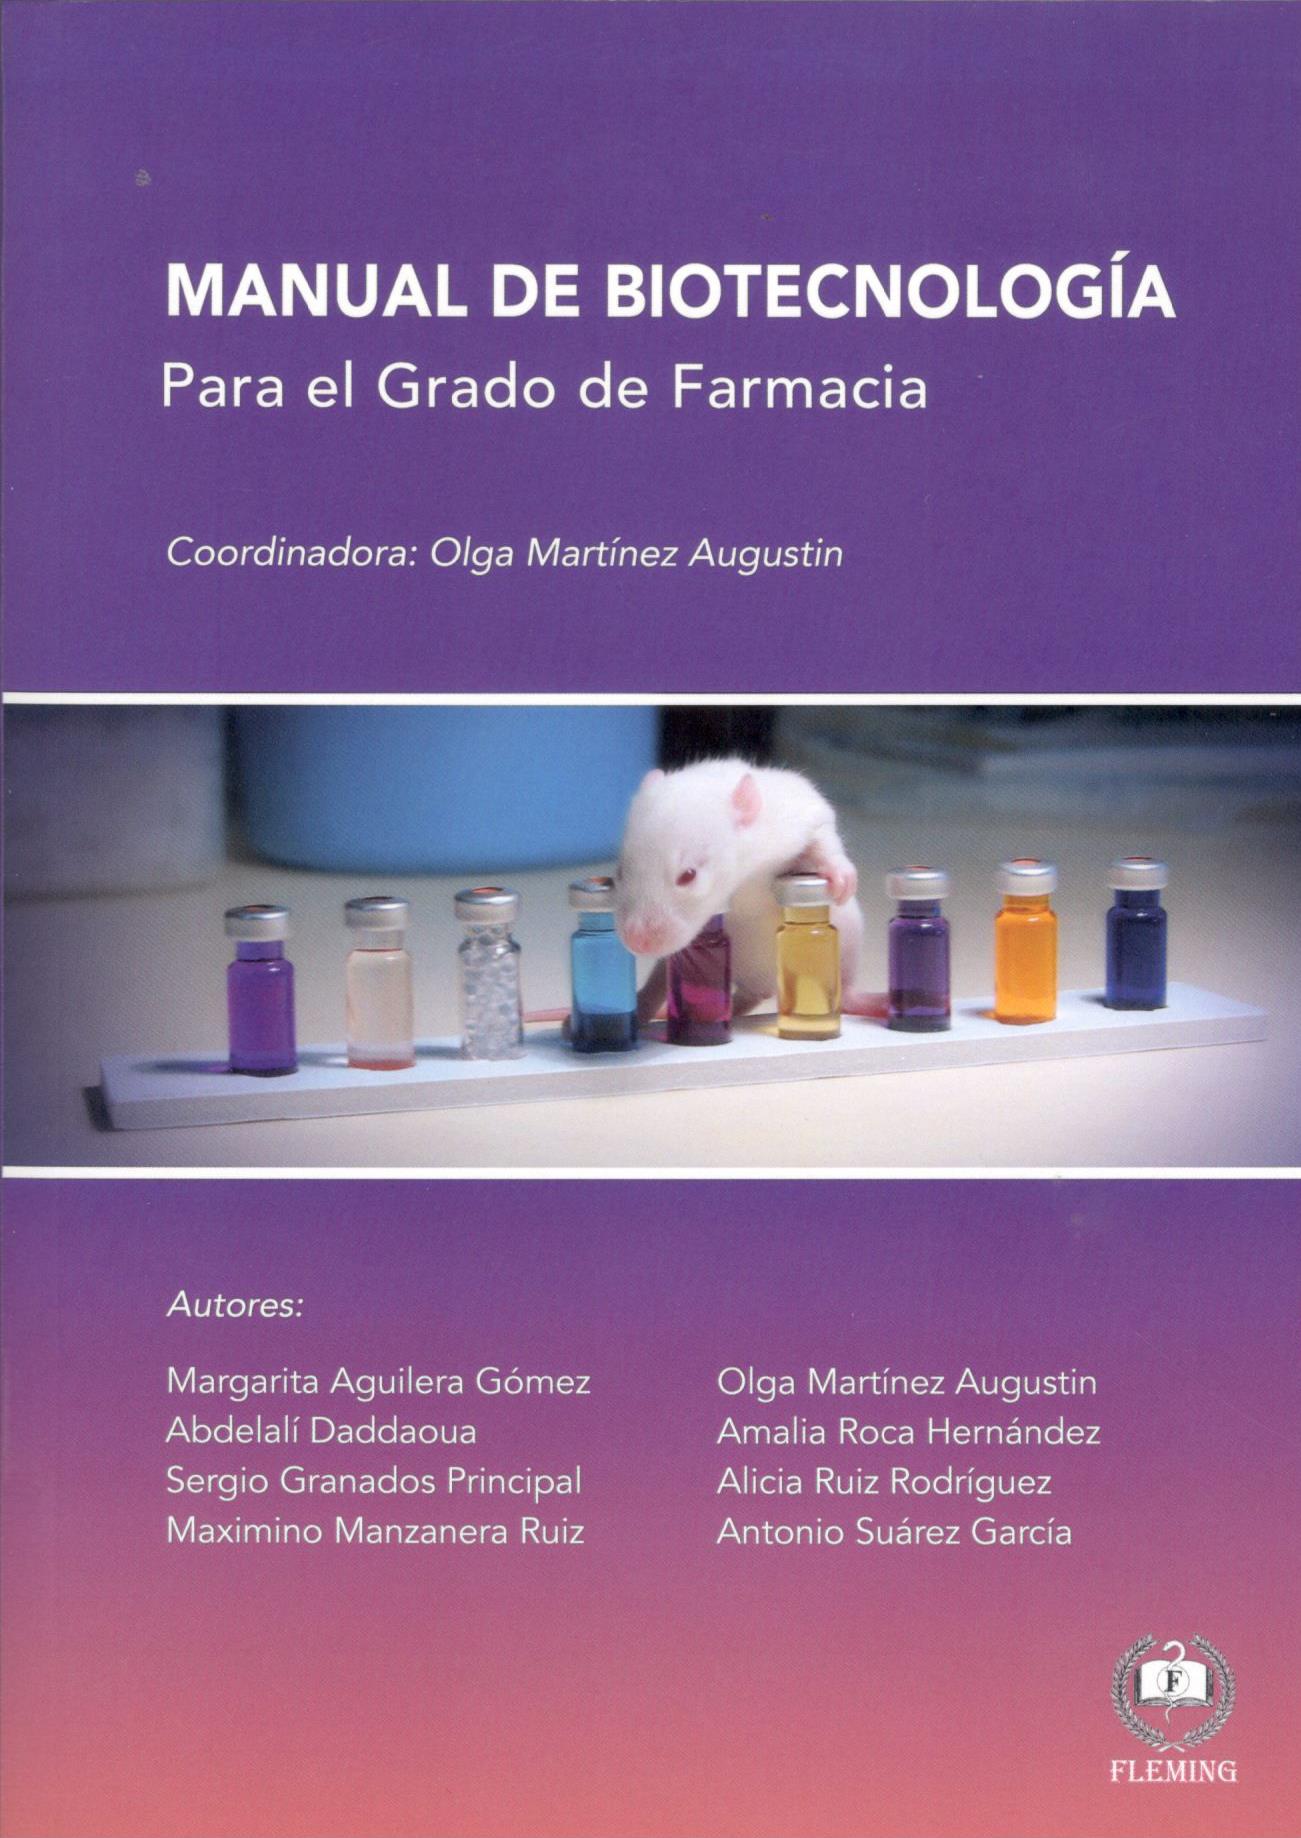 MANUAL DE BIOTECNOLOGIA